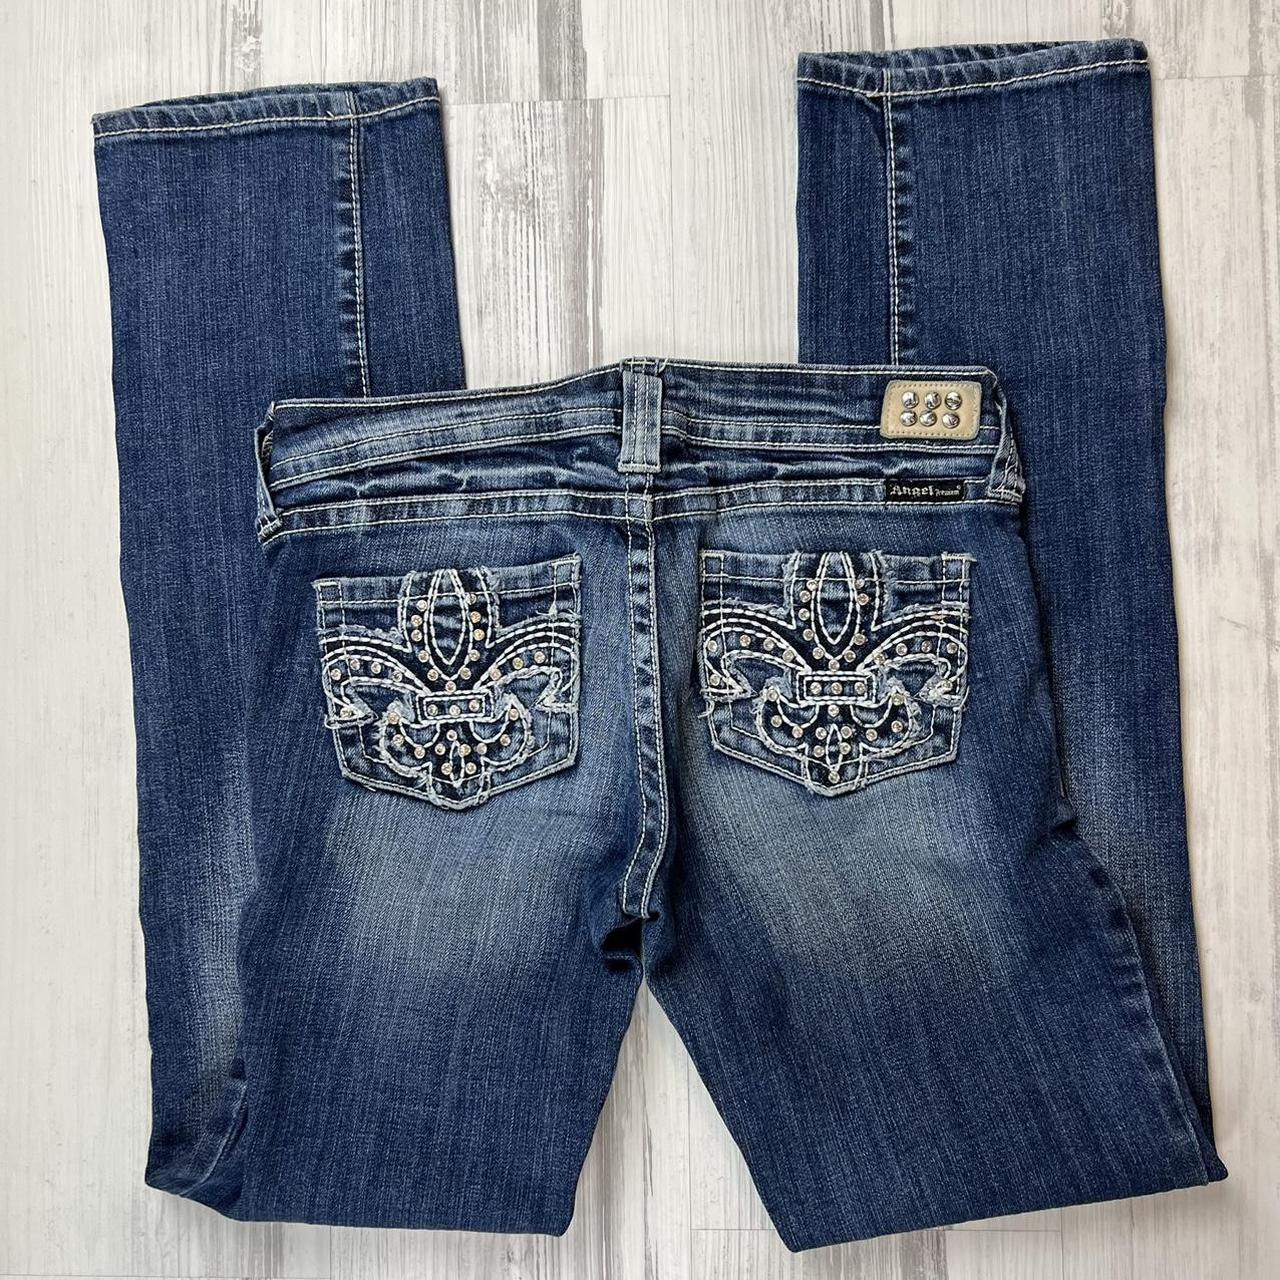 Mcbling bedazzled back pocket denim jeans, size 27”,... - Depop